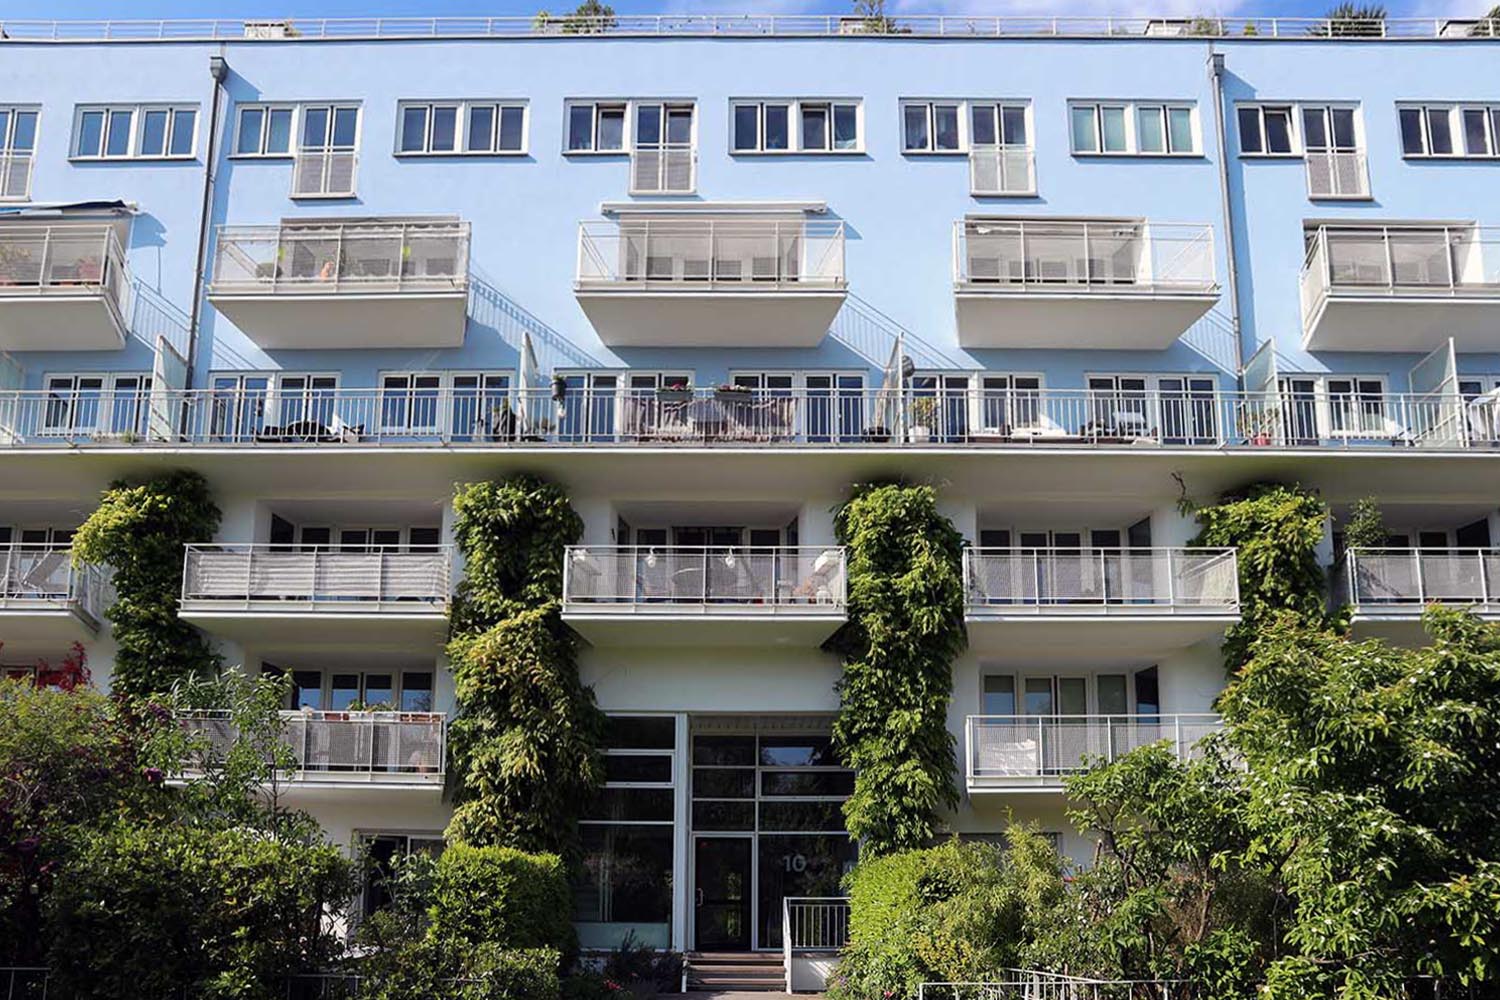 Im MediaPark 10, Wohnungen, 1996. Steidle+Partner Architekten (jetzt Steidle Architekten), München. Der Außenbereich wurde mit großen Balkonen, Dachterrassen auf der Südseite, Pergolen und Laubengängen im Norden gestaltet. 